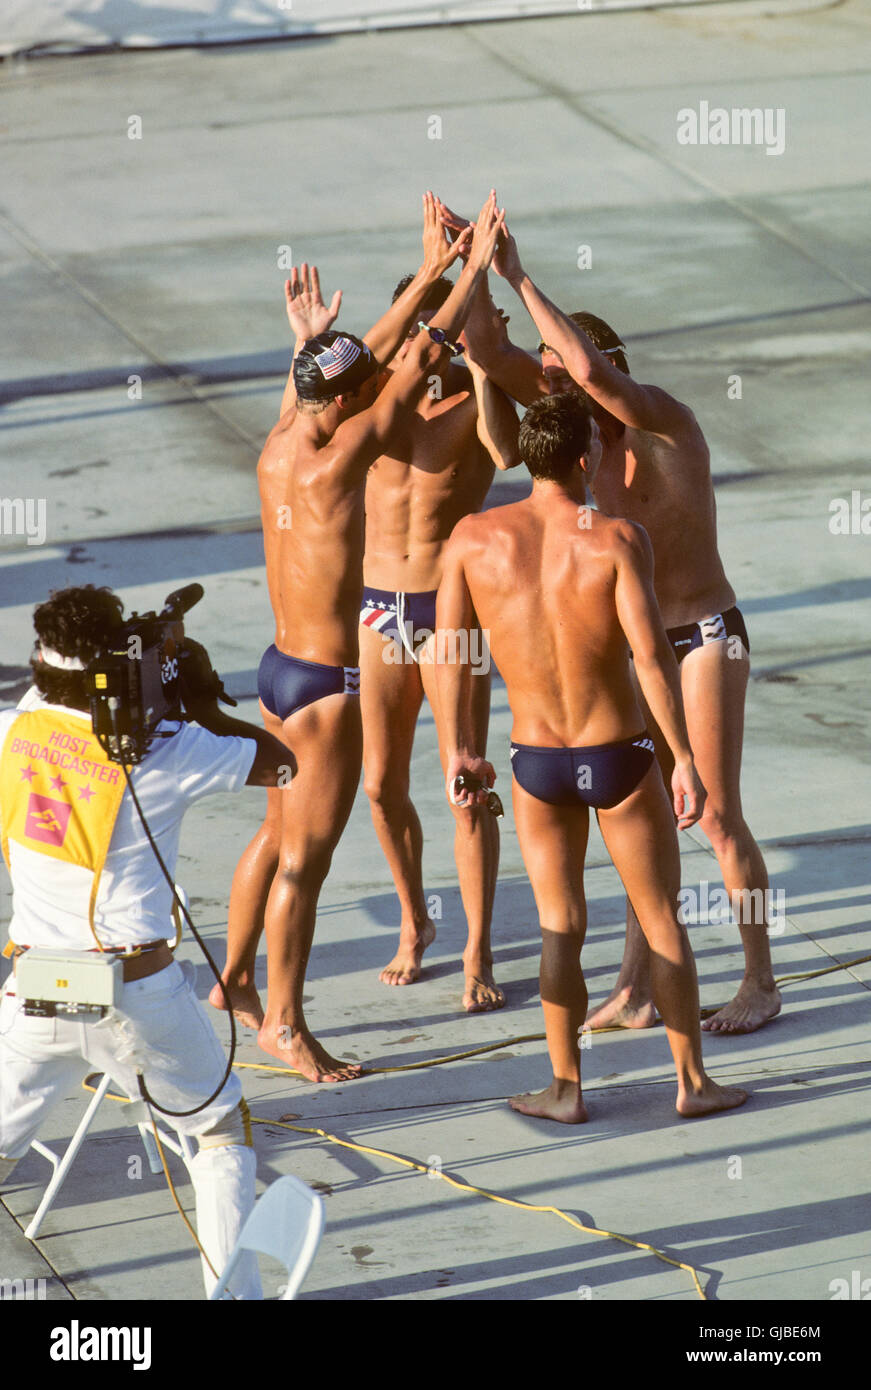 California - Los Angeles - Juegos Olímpicos de Verano de 1984. Hombre de natación. 4x200m freestyle relé, ganadores de medalla de oro Foto de stock